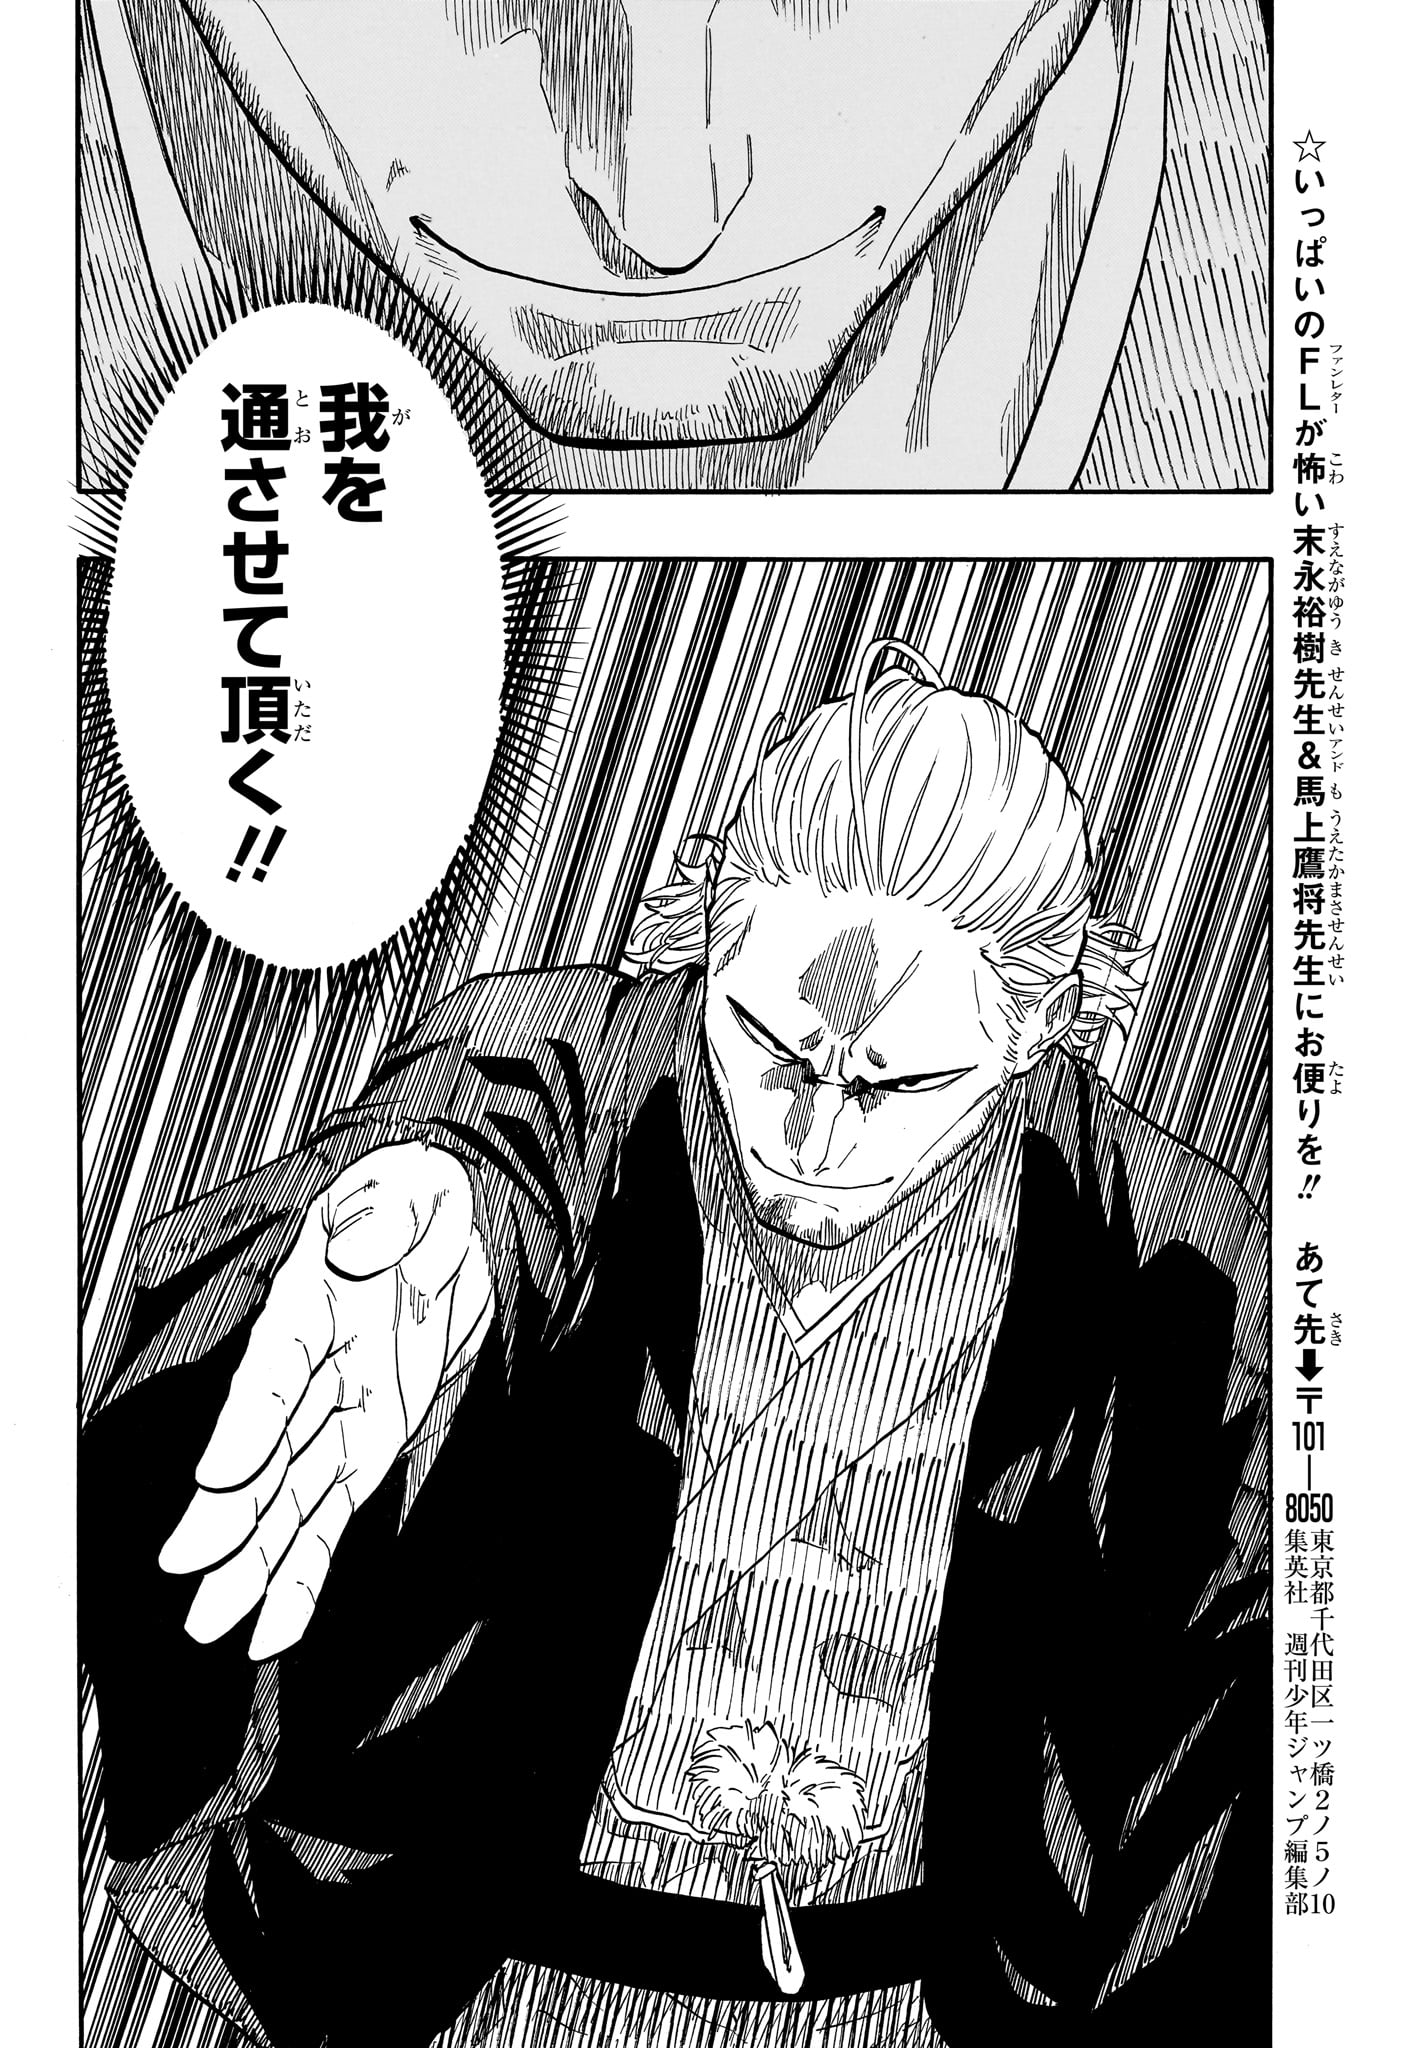 Akane-Banashi - Chapter 103 - Page 18